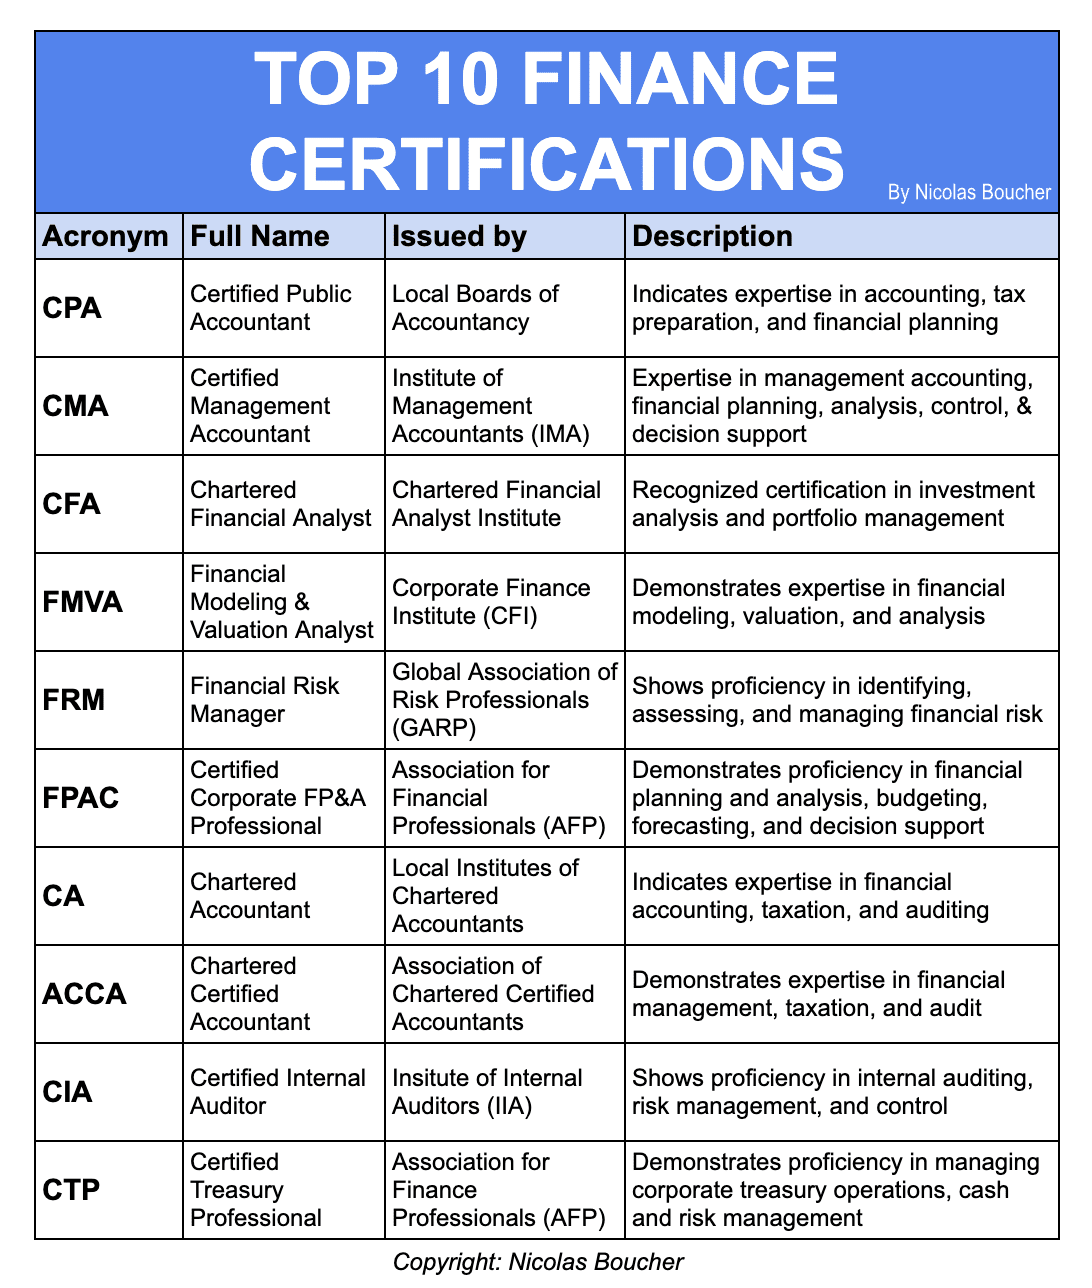 Top 10 Finance Certifications